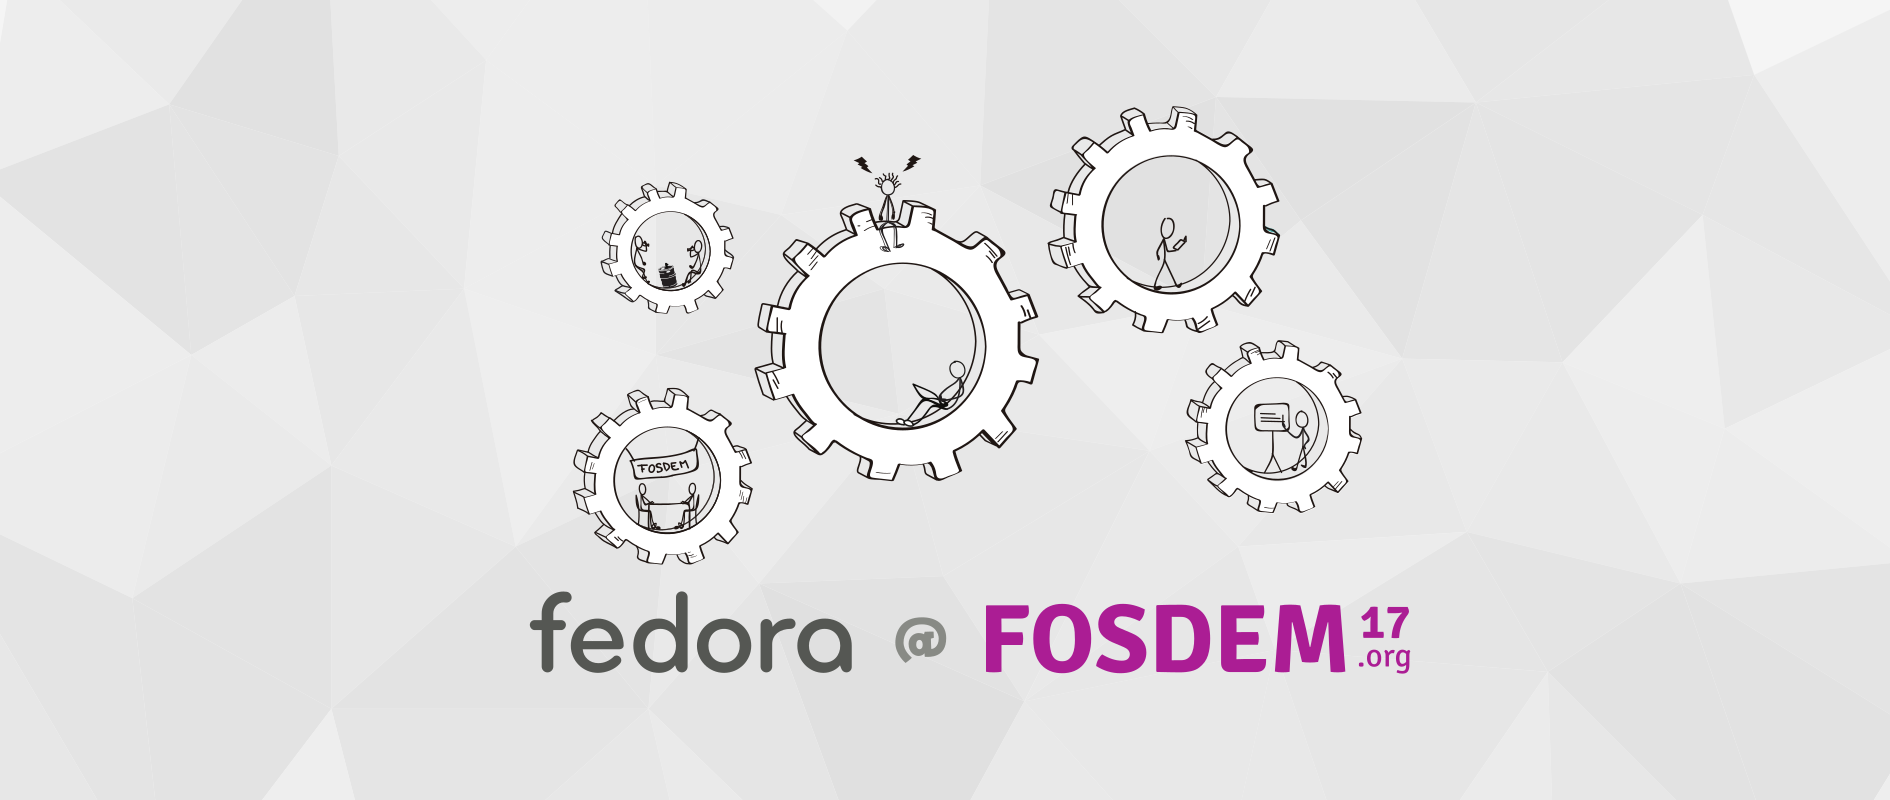 Find Fedora at FOSDEM 2017!